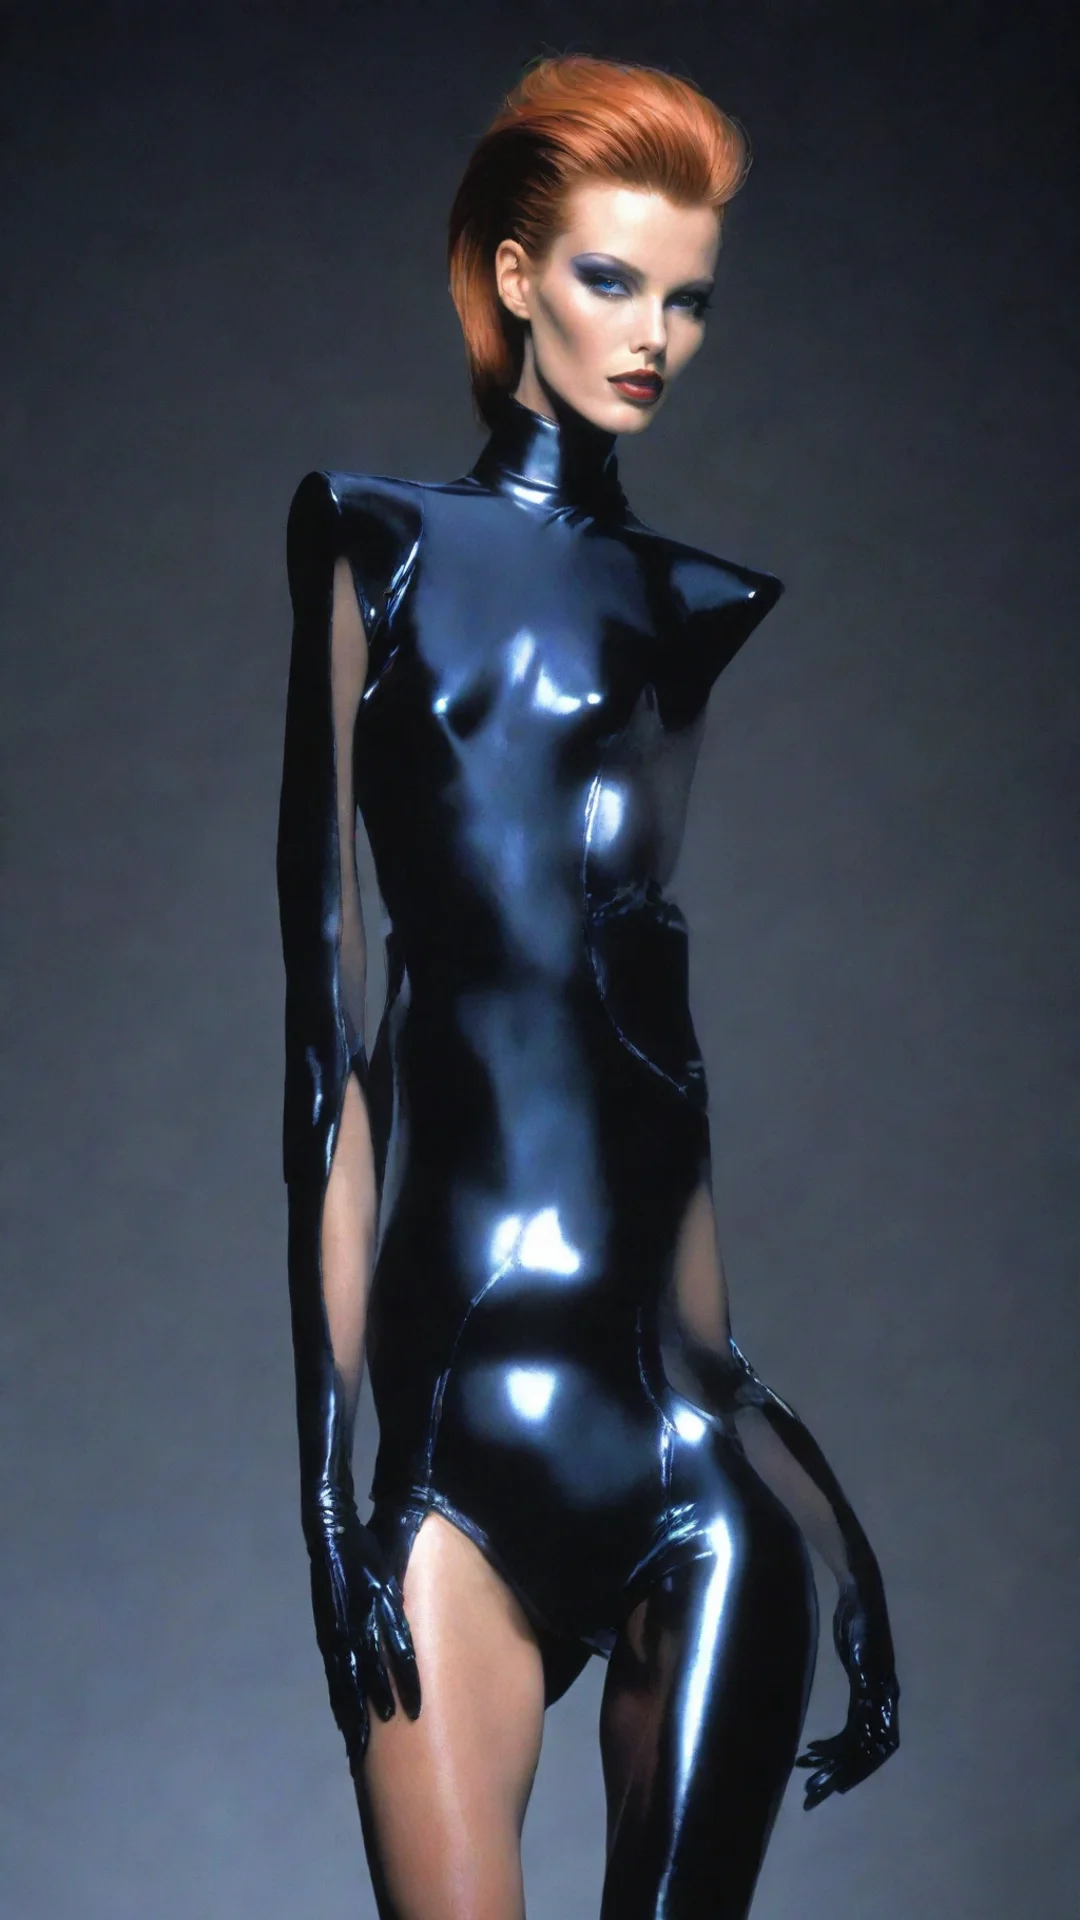 aithierry mugler fashion style futuristic supermodel tall